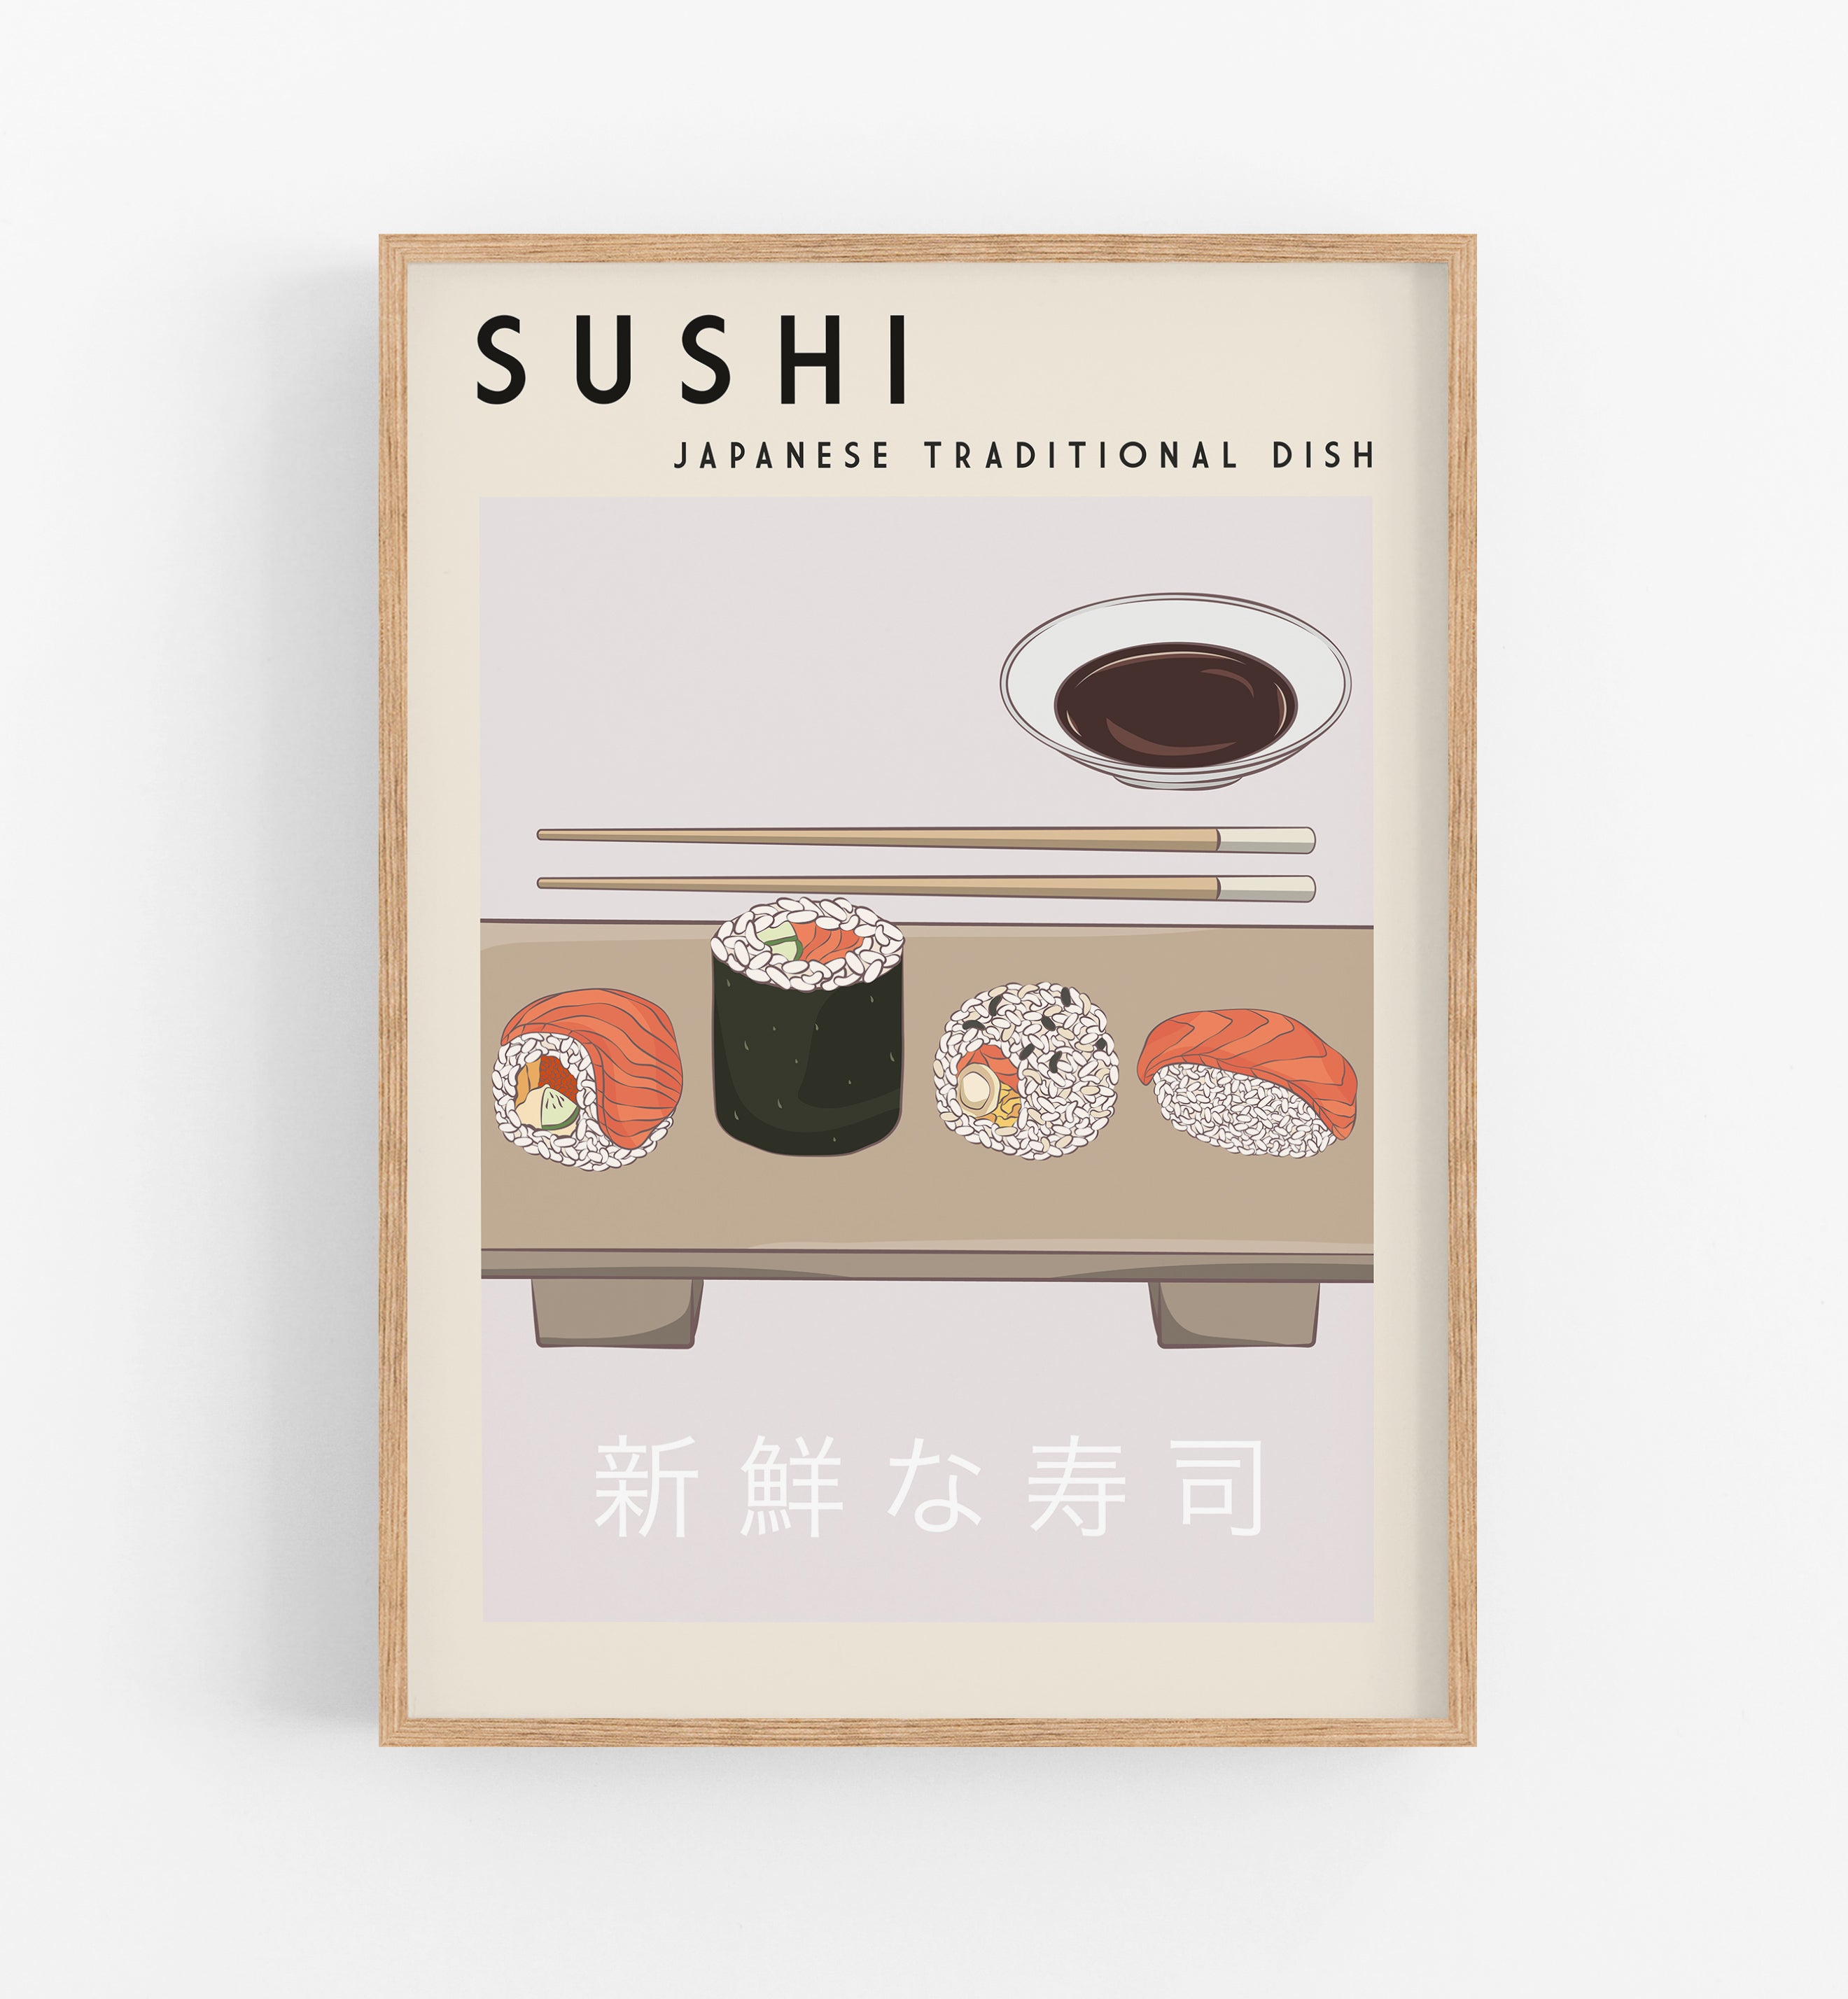 Sushi Dish